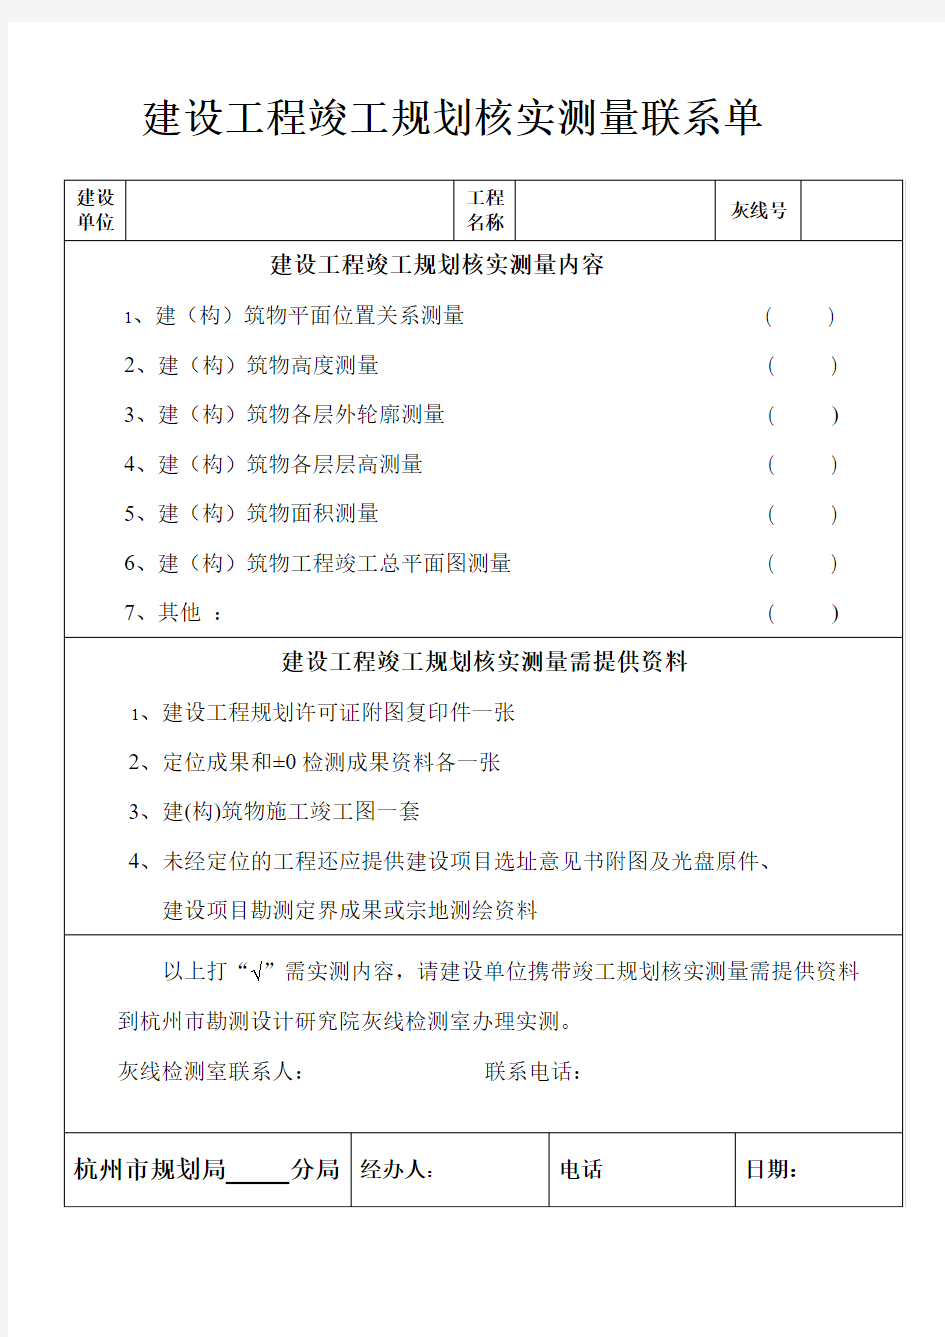 建设项目灰线报验表-杭州勘测设计研究院